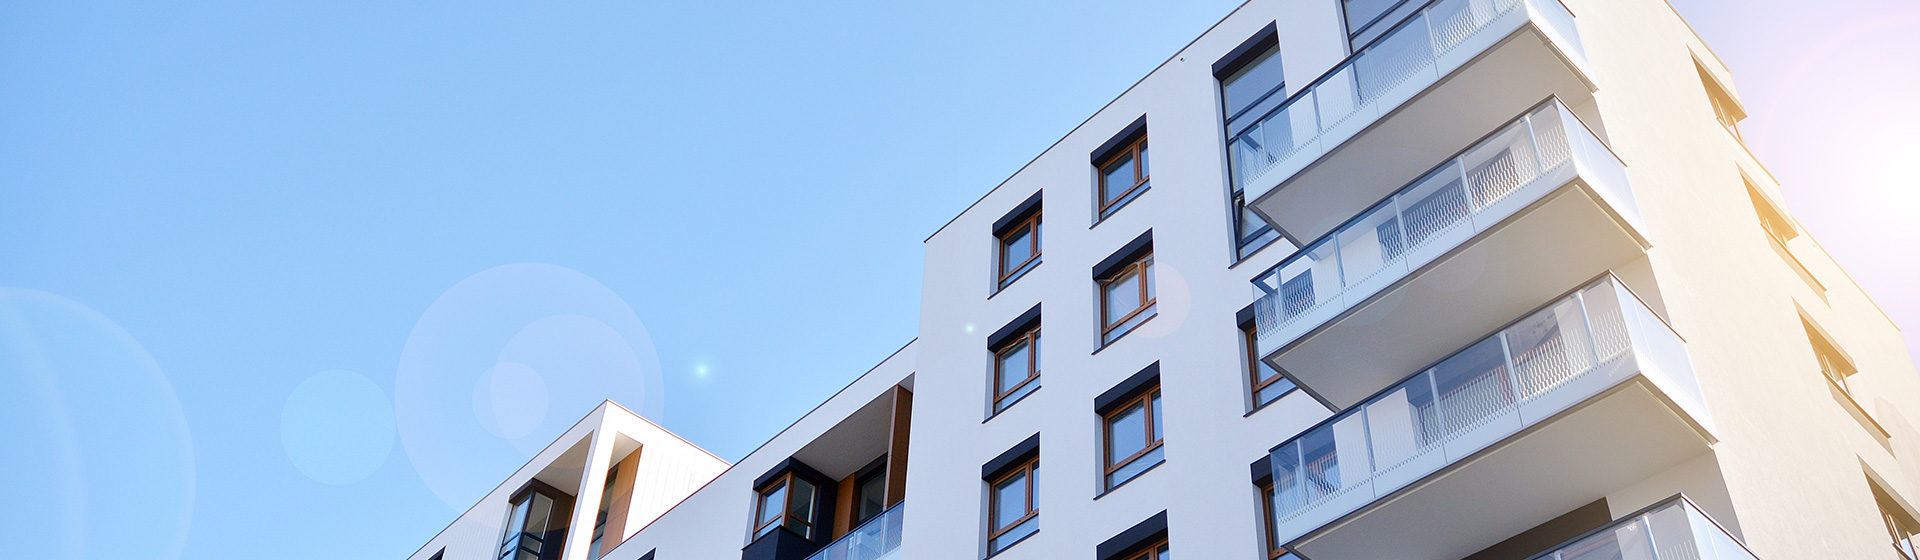 Moderne Mehrfamilienhäuser mit Balkonen unter blauem Himmel – WEG-Verwaltung inveni consulting